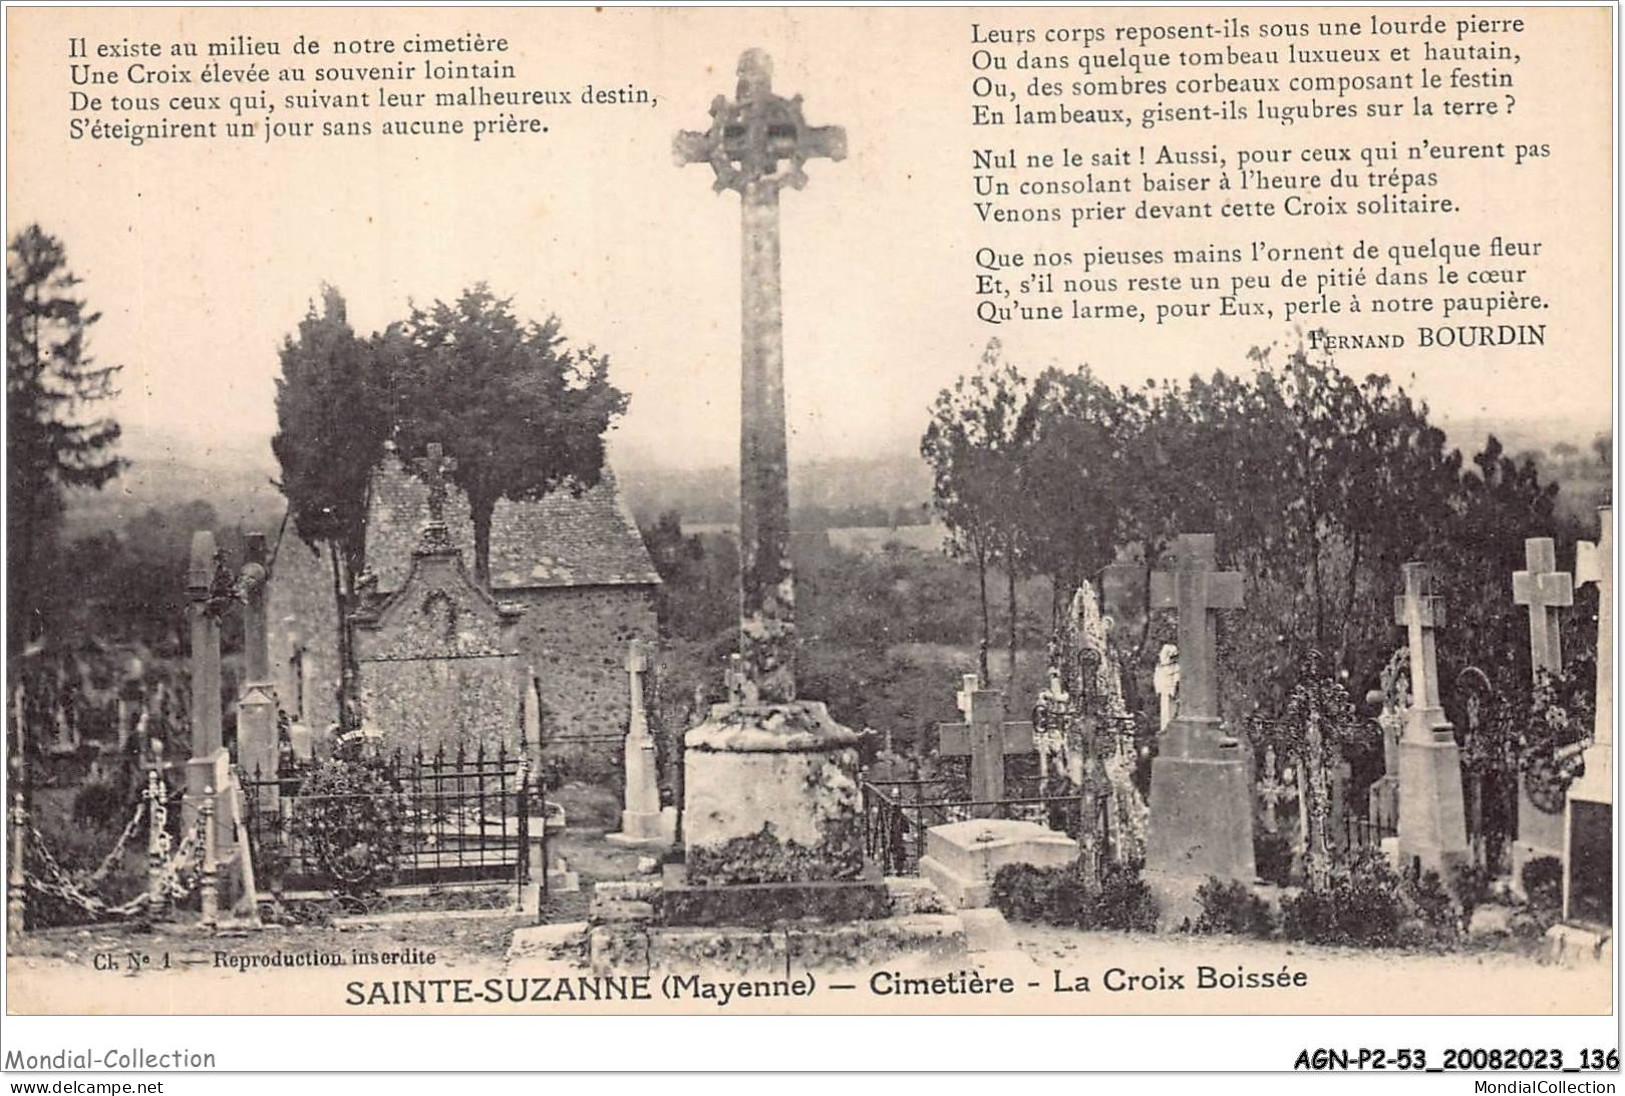 AGNP2-0142-53 - SAINTE-SUZANNE - Cimetière - La Croix Boissée - Sainte Suzanne